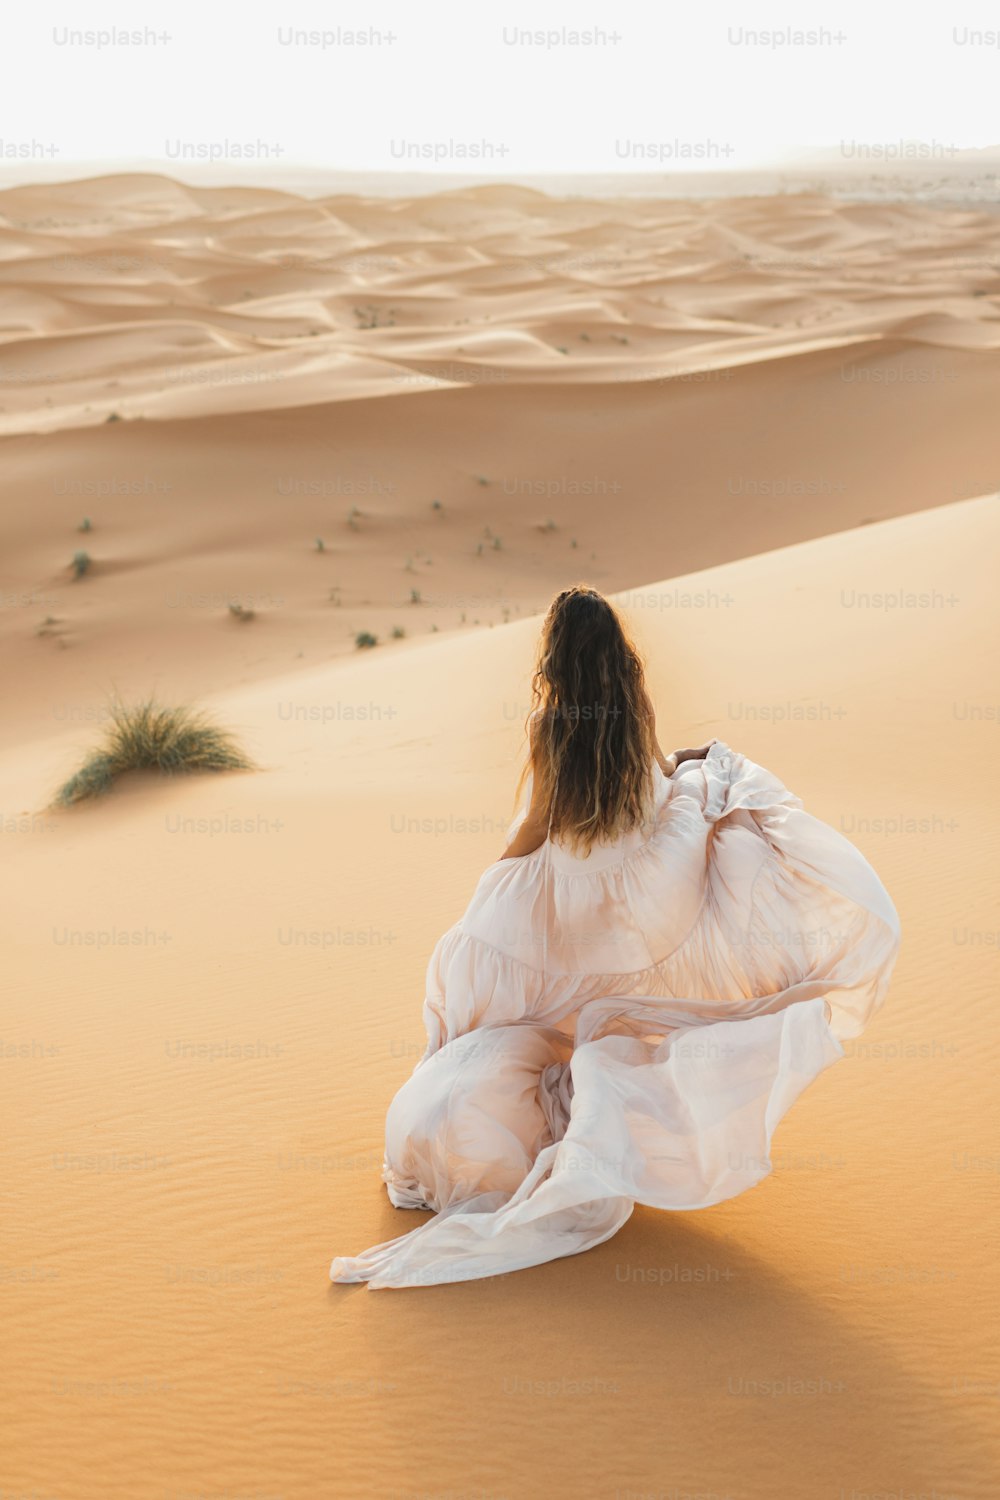 Ritratto della donna della sposa in abito da sposa incredibile nel deserto del Sahara, Marocco. Luce calda della sera, bella tonalità pastello, dune di sabbia all'orizzonte. Vista da dietro.